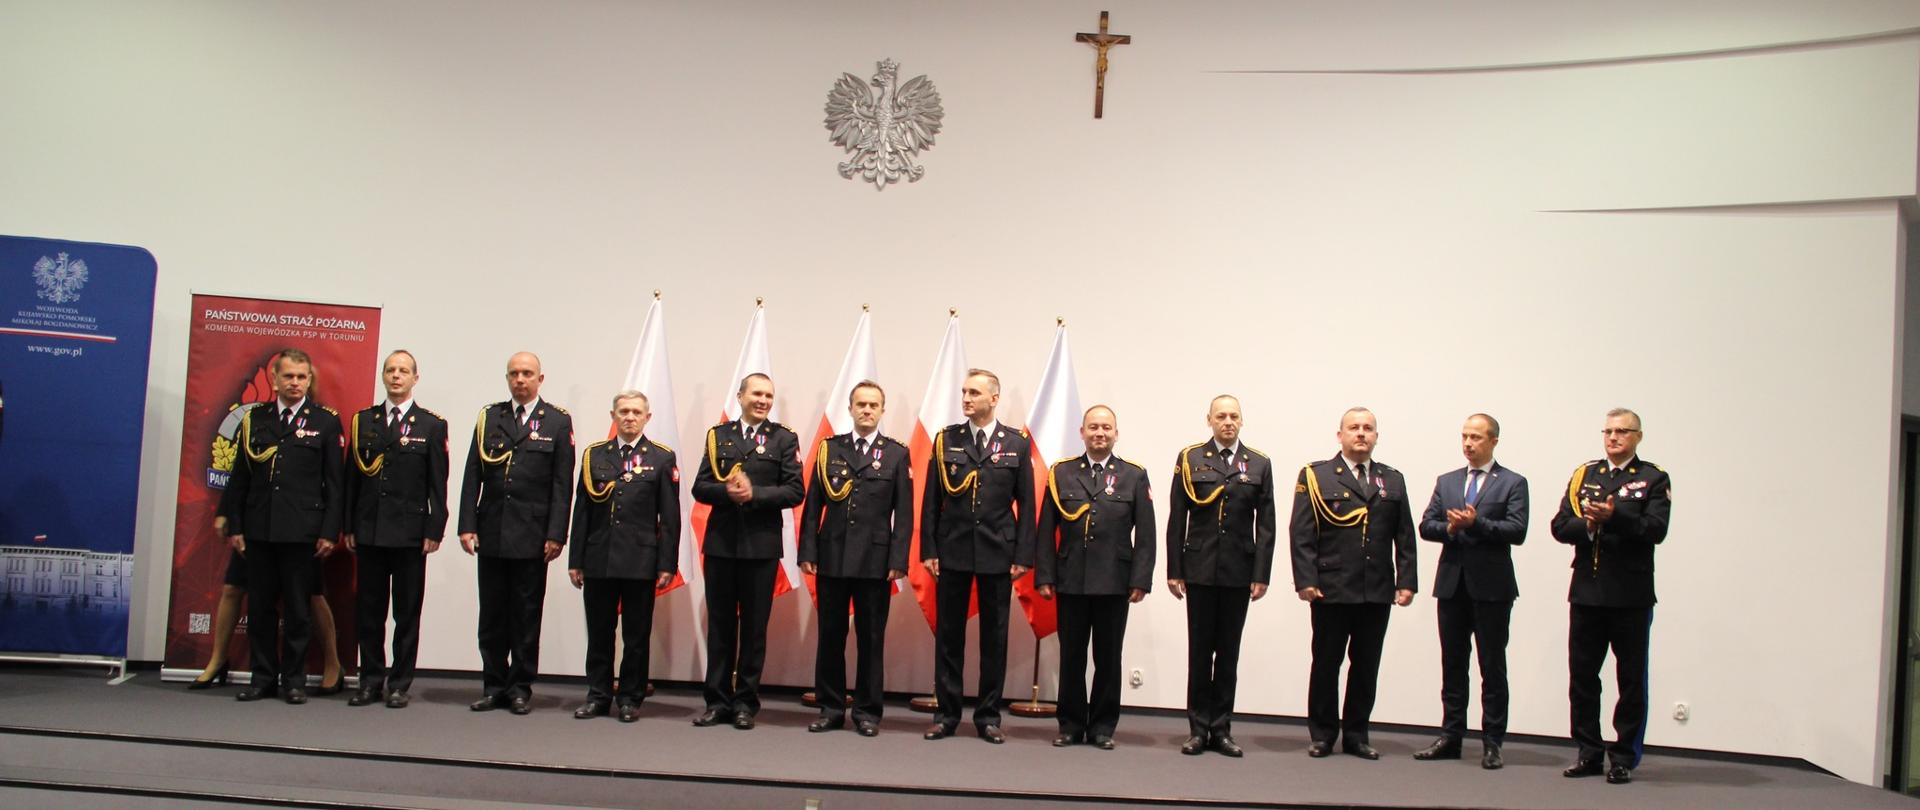 Na zdjęciu znajdują się wyróżnieni funkcjonariusze po otrzymaniu odznaczeń. Zdjęcie wykonano w Kujawsko-Pomorskim Urzędzie Wojewódzkim.